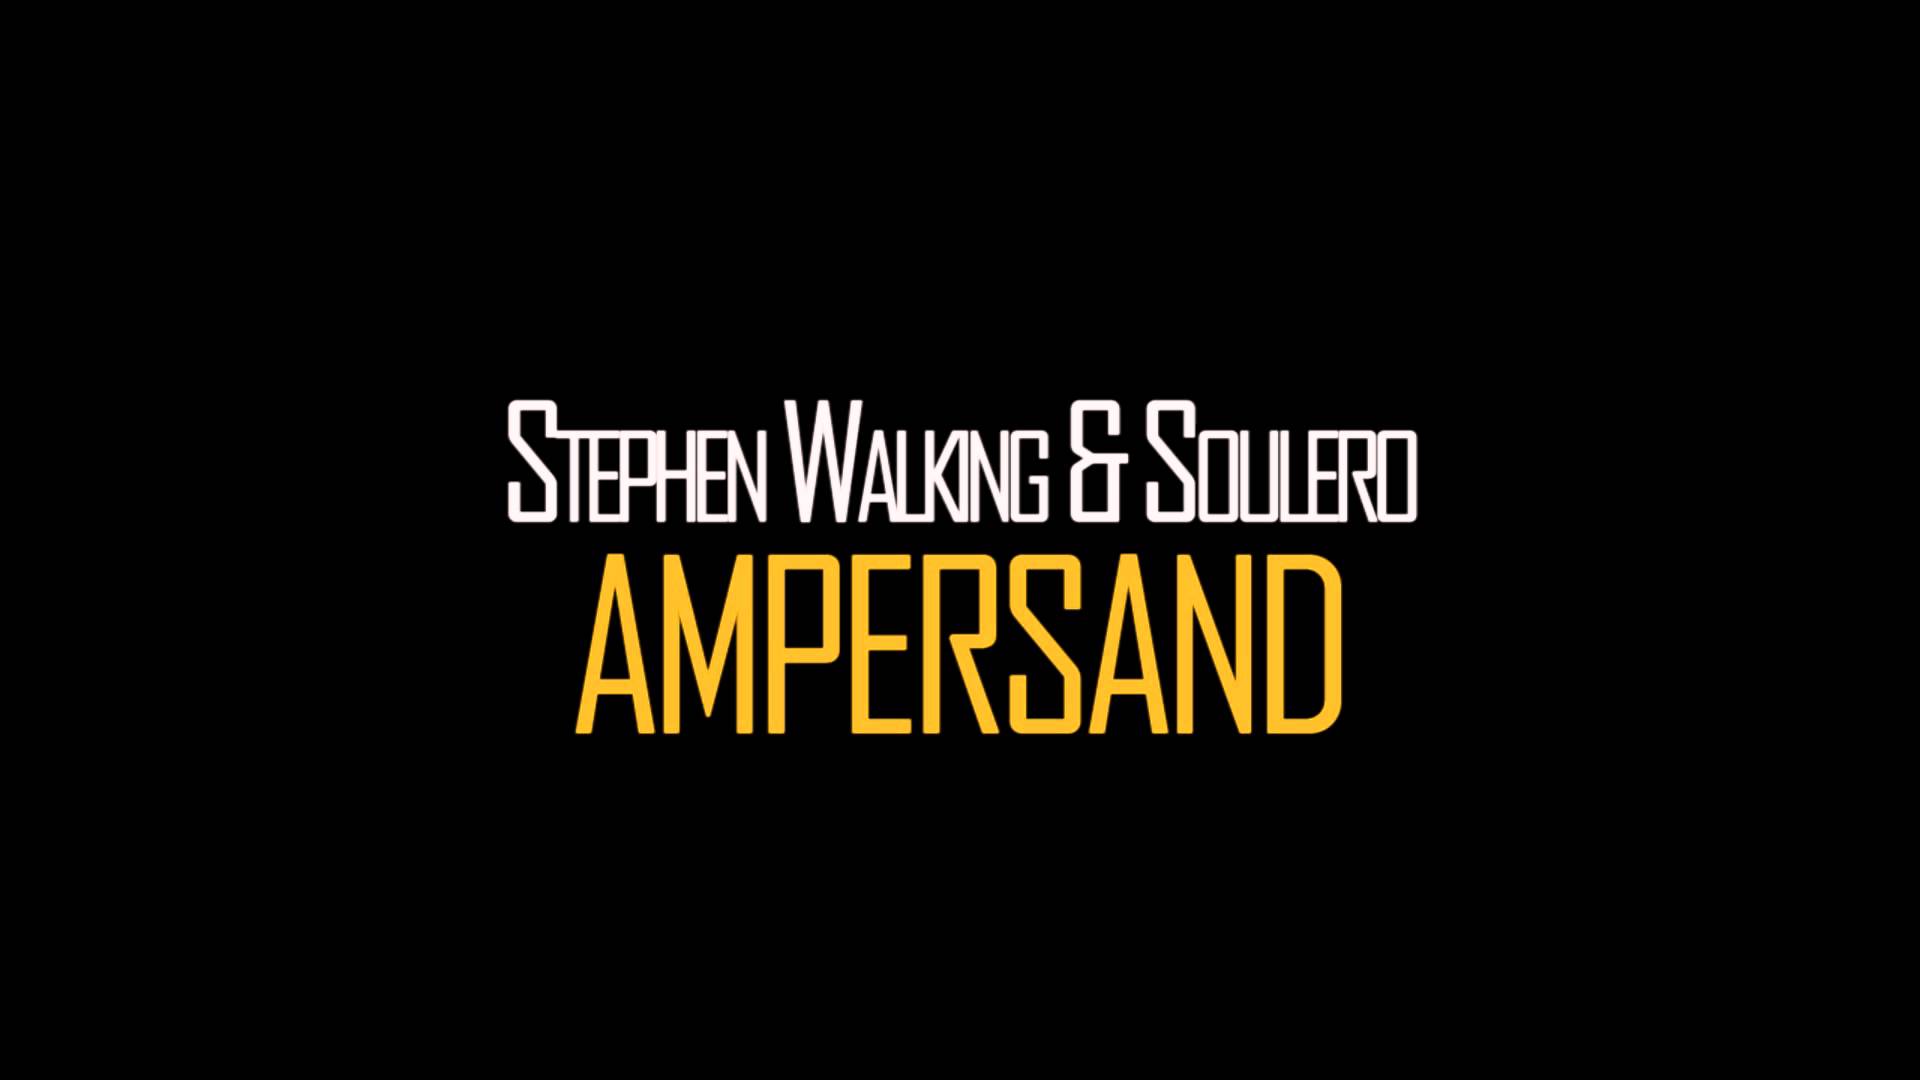 Stephen Walking & Soulero - Ampersand (Original Mix) [Free Download]